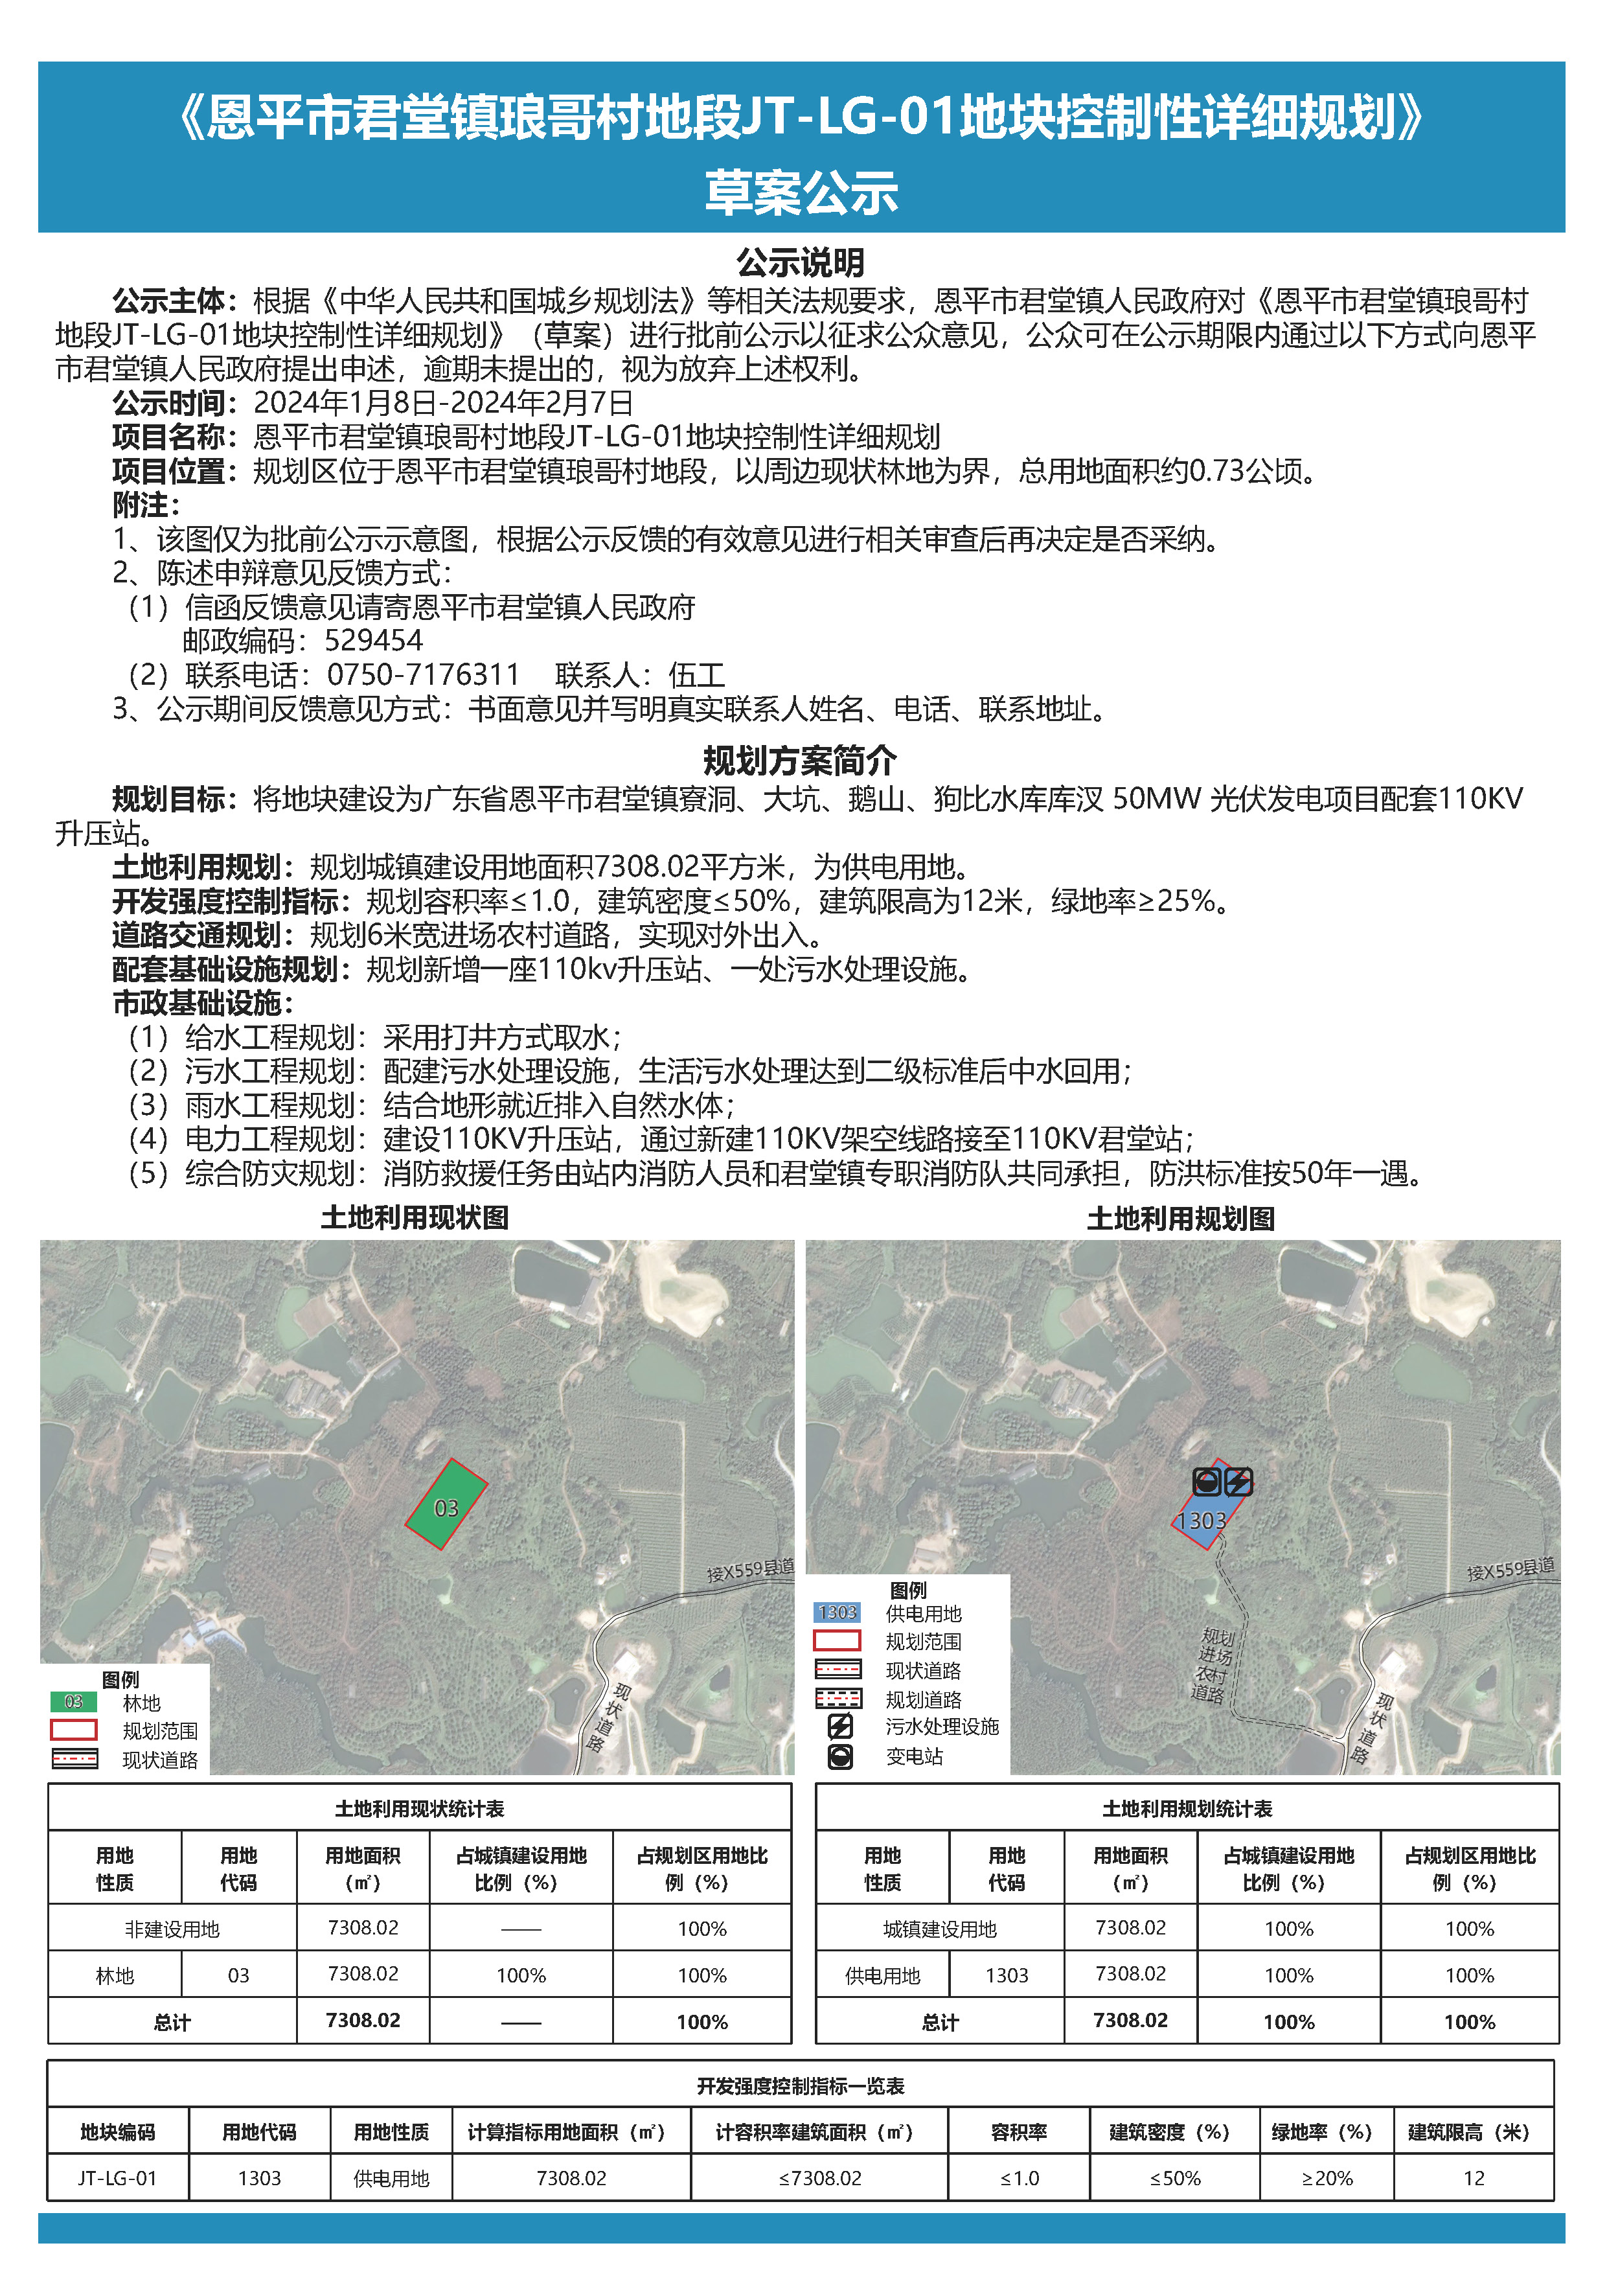 《恩平市君堂镇琅哥村地段JT-LG-01地块控制性详细规划》公示文件.jpg